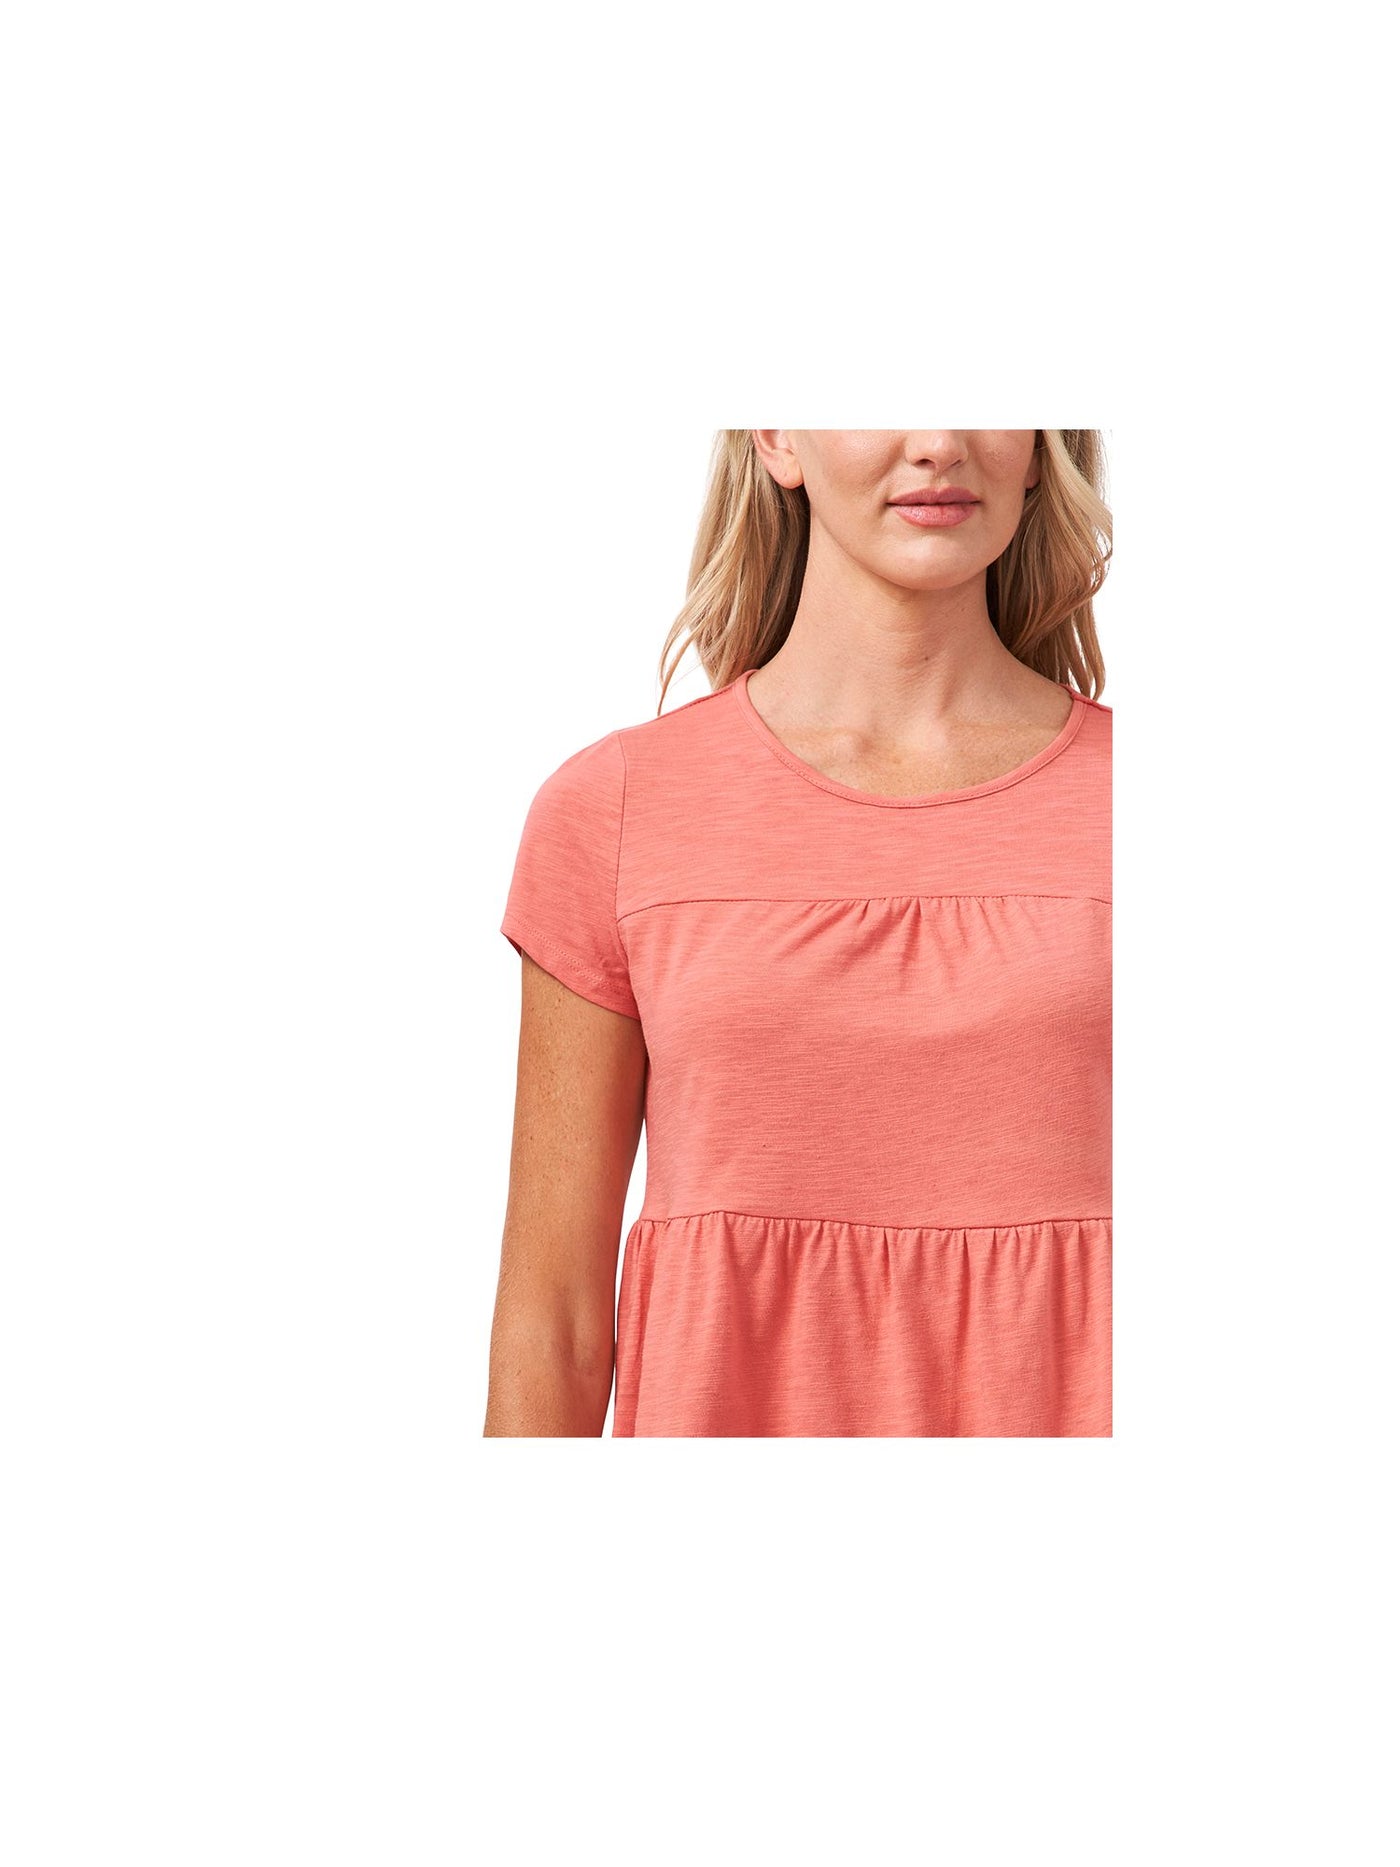 CECE Womens Pink Cotton Blend Short Sleeve Crew Neck T-Shirt XS